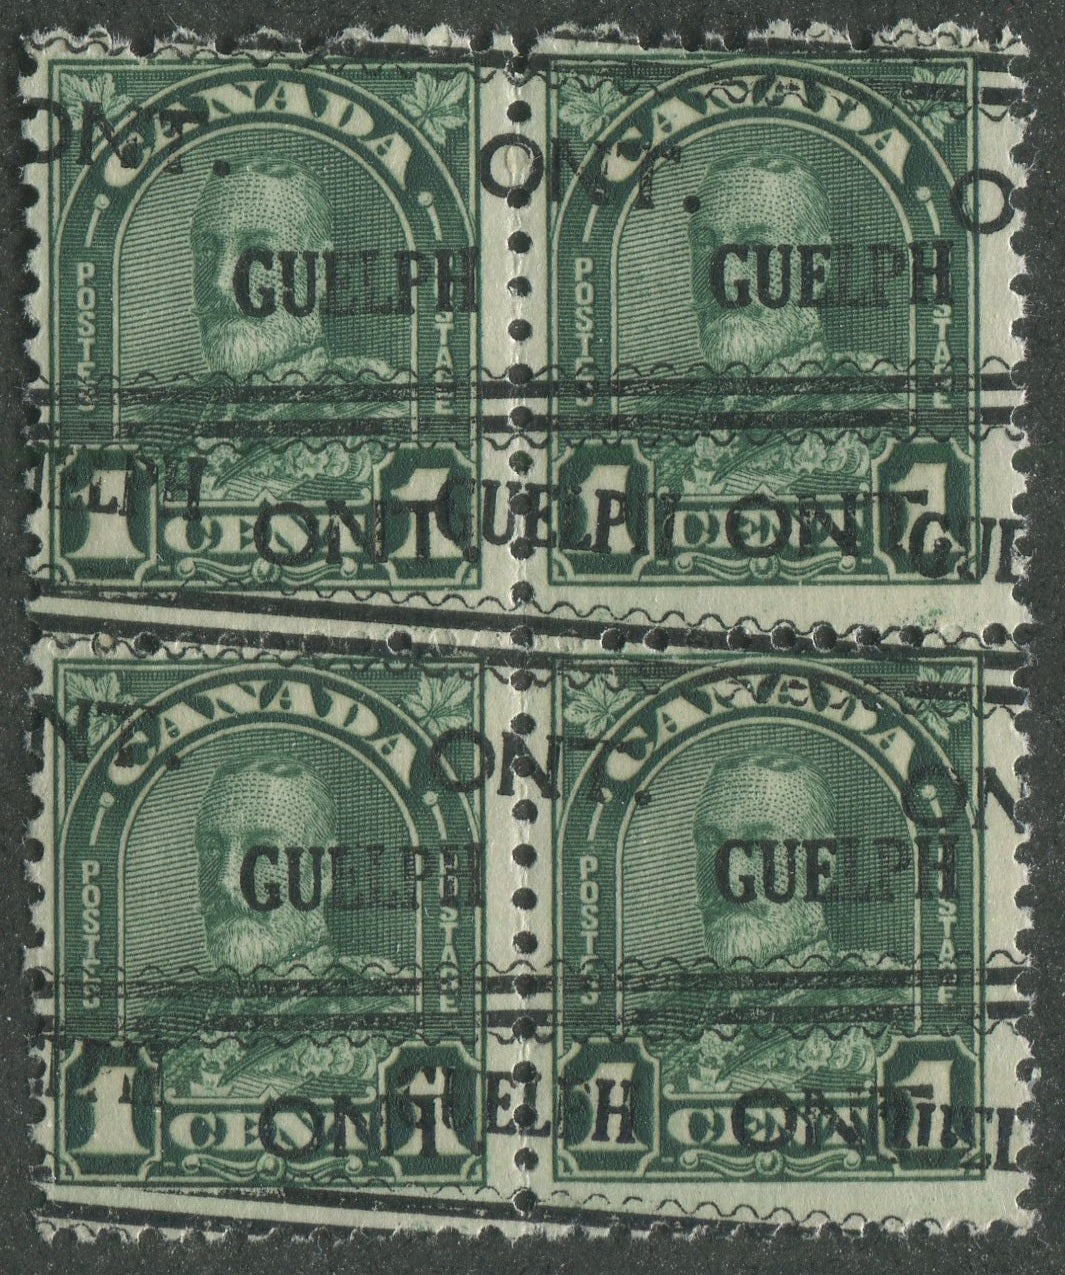 GUEL001163 - GUELPH 1-163b-D - Block of 4